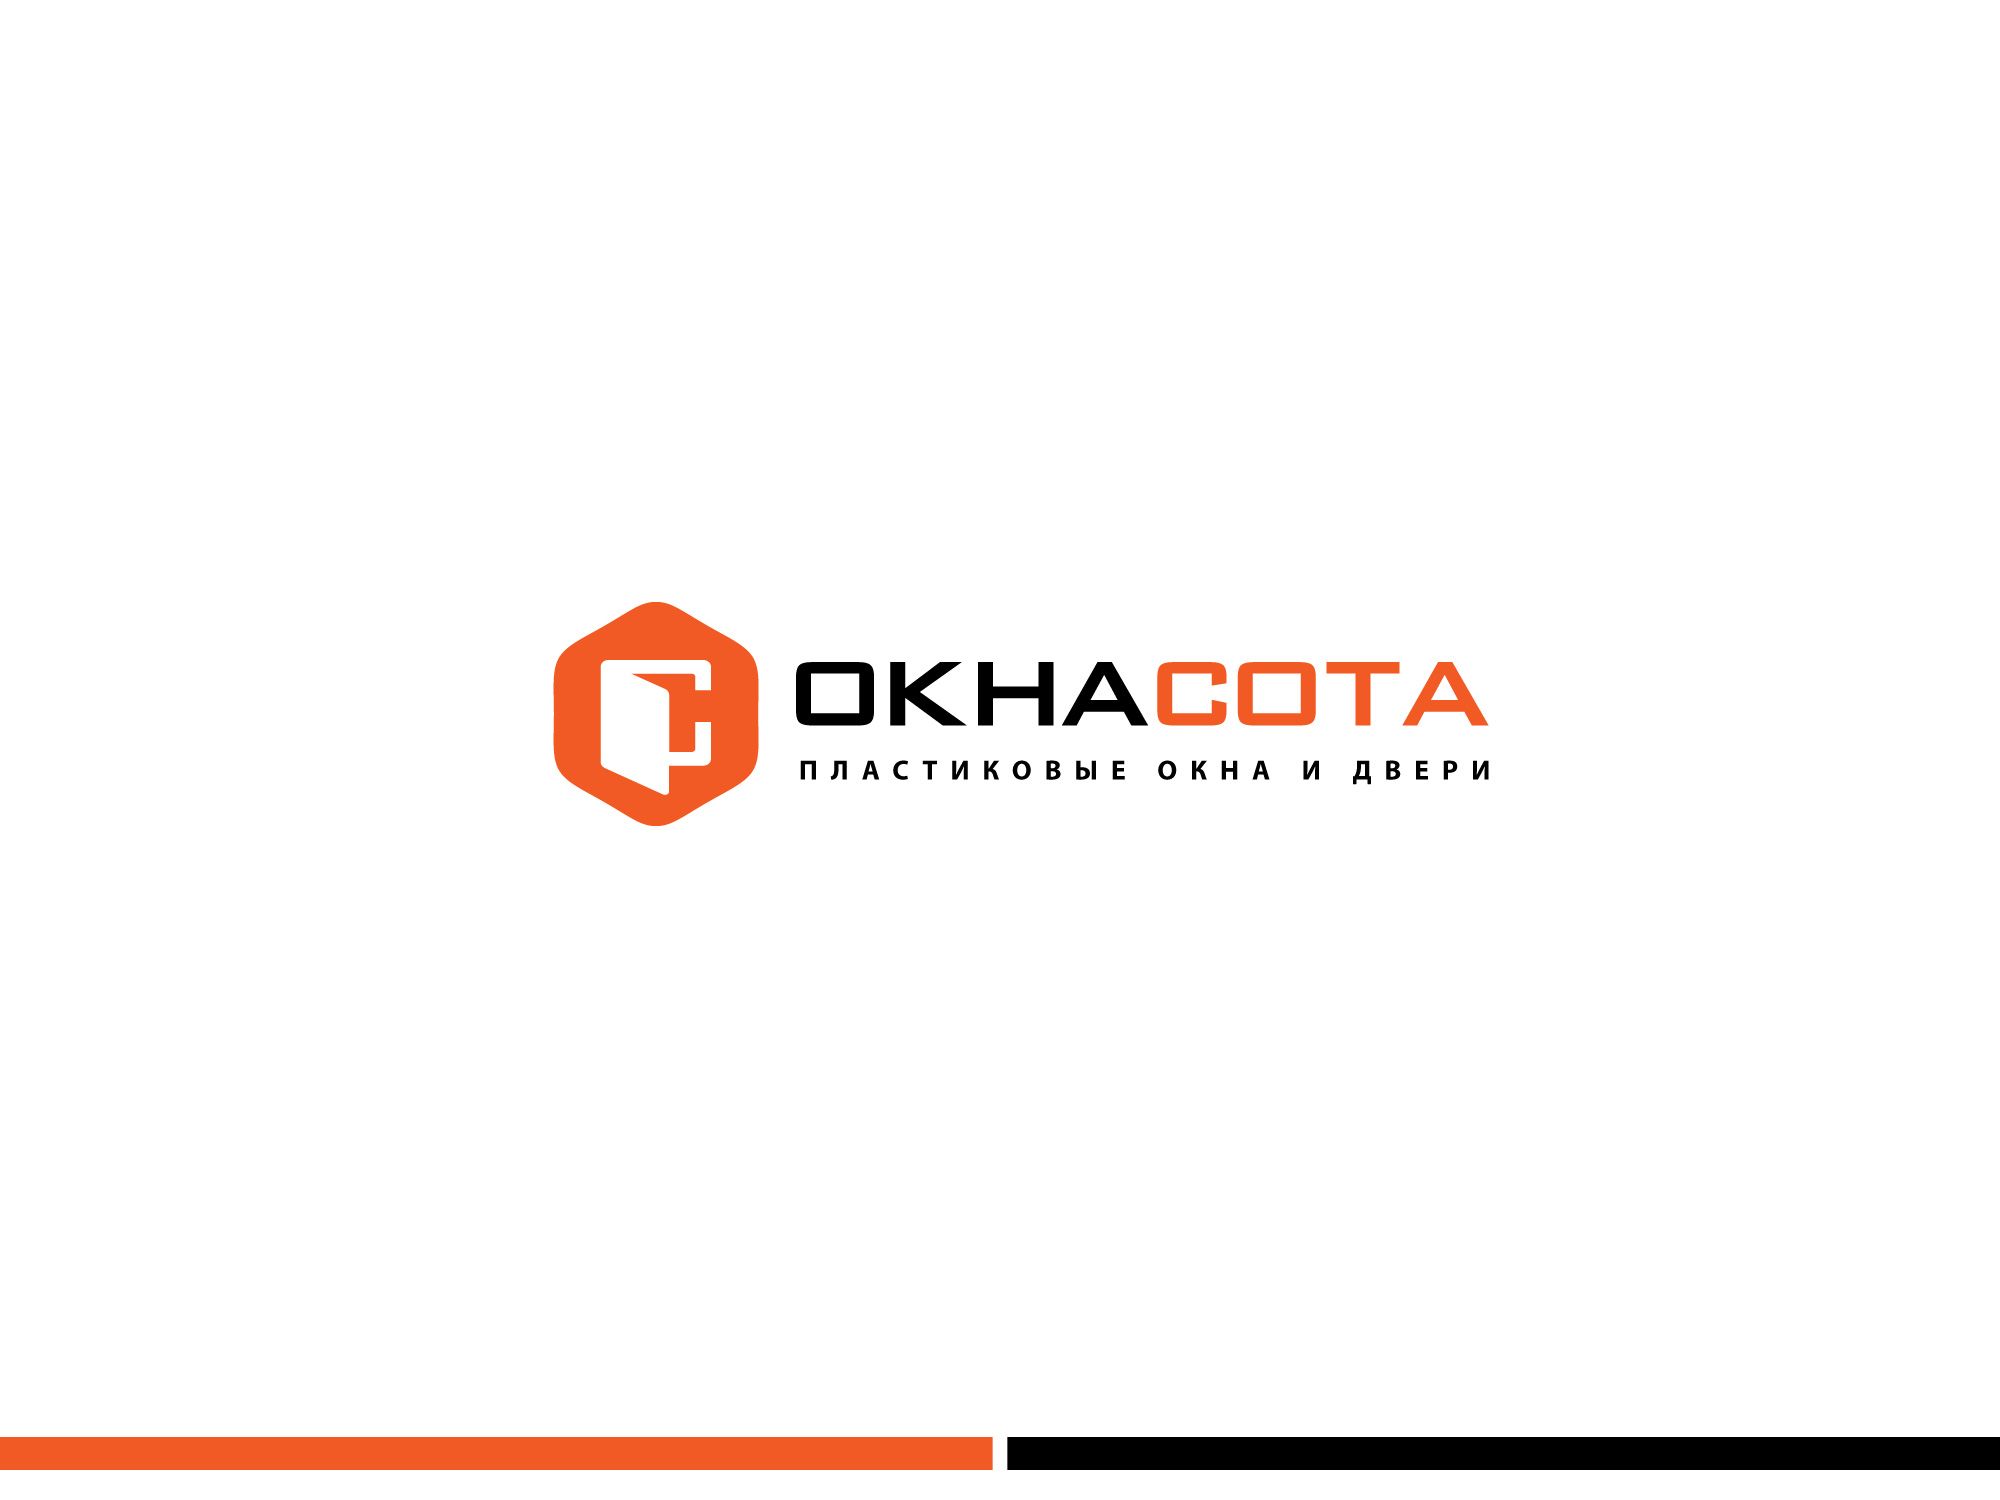 Логотип для ОКНАСОТА - дизайнер GreenRed